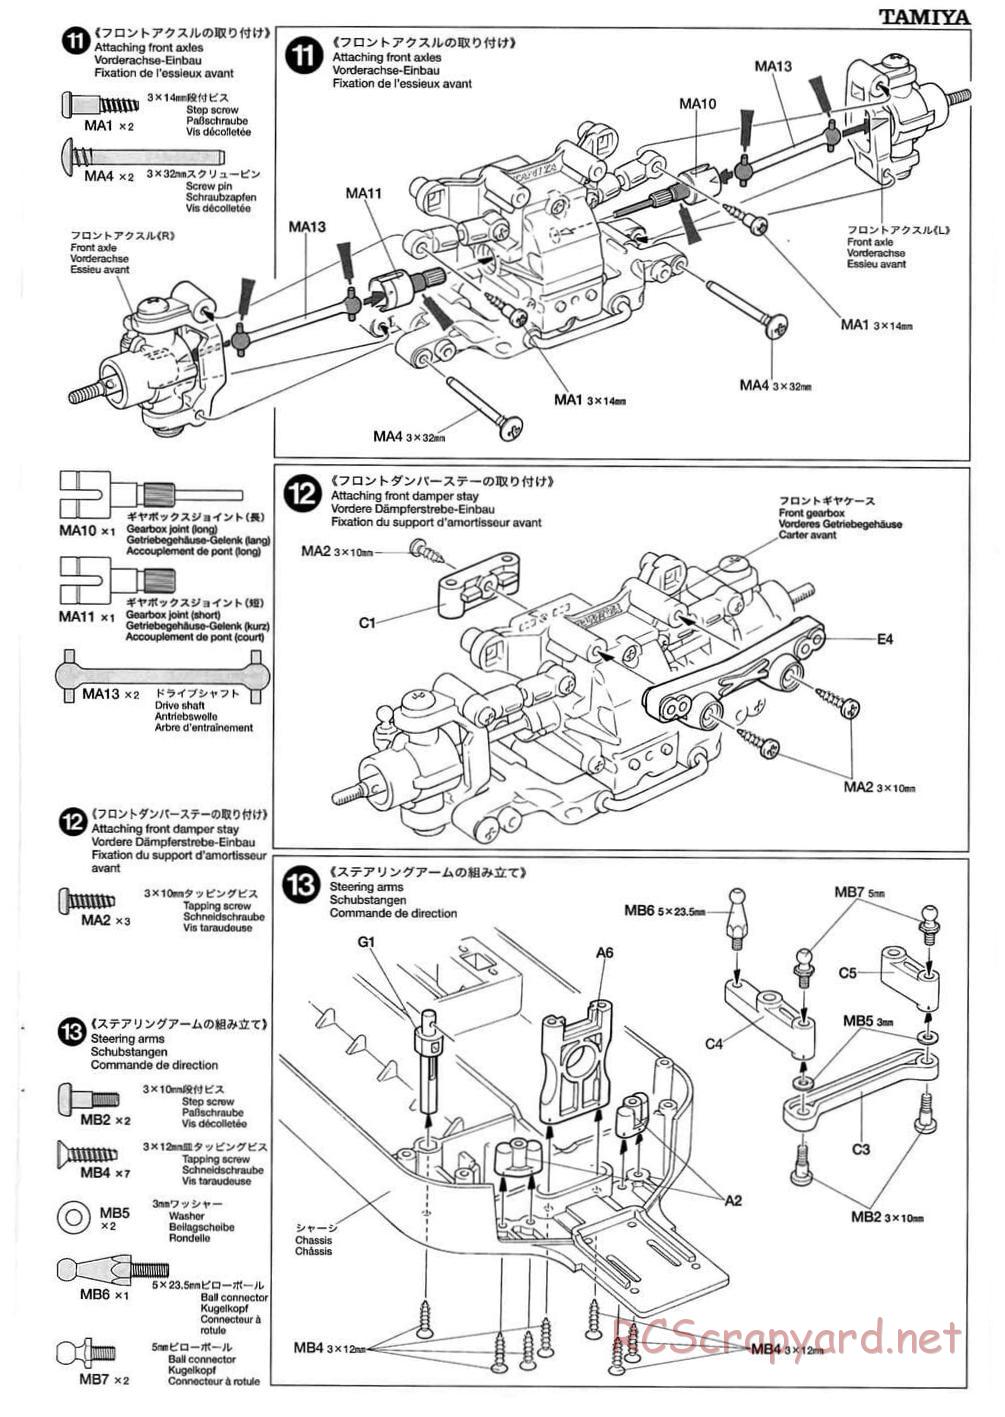 Tamiya - TB-01 Chassis - Manual - Page 7